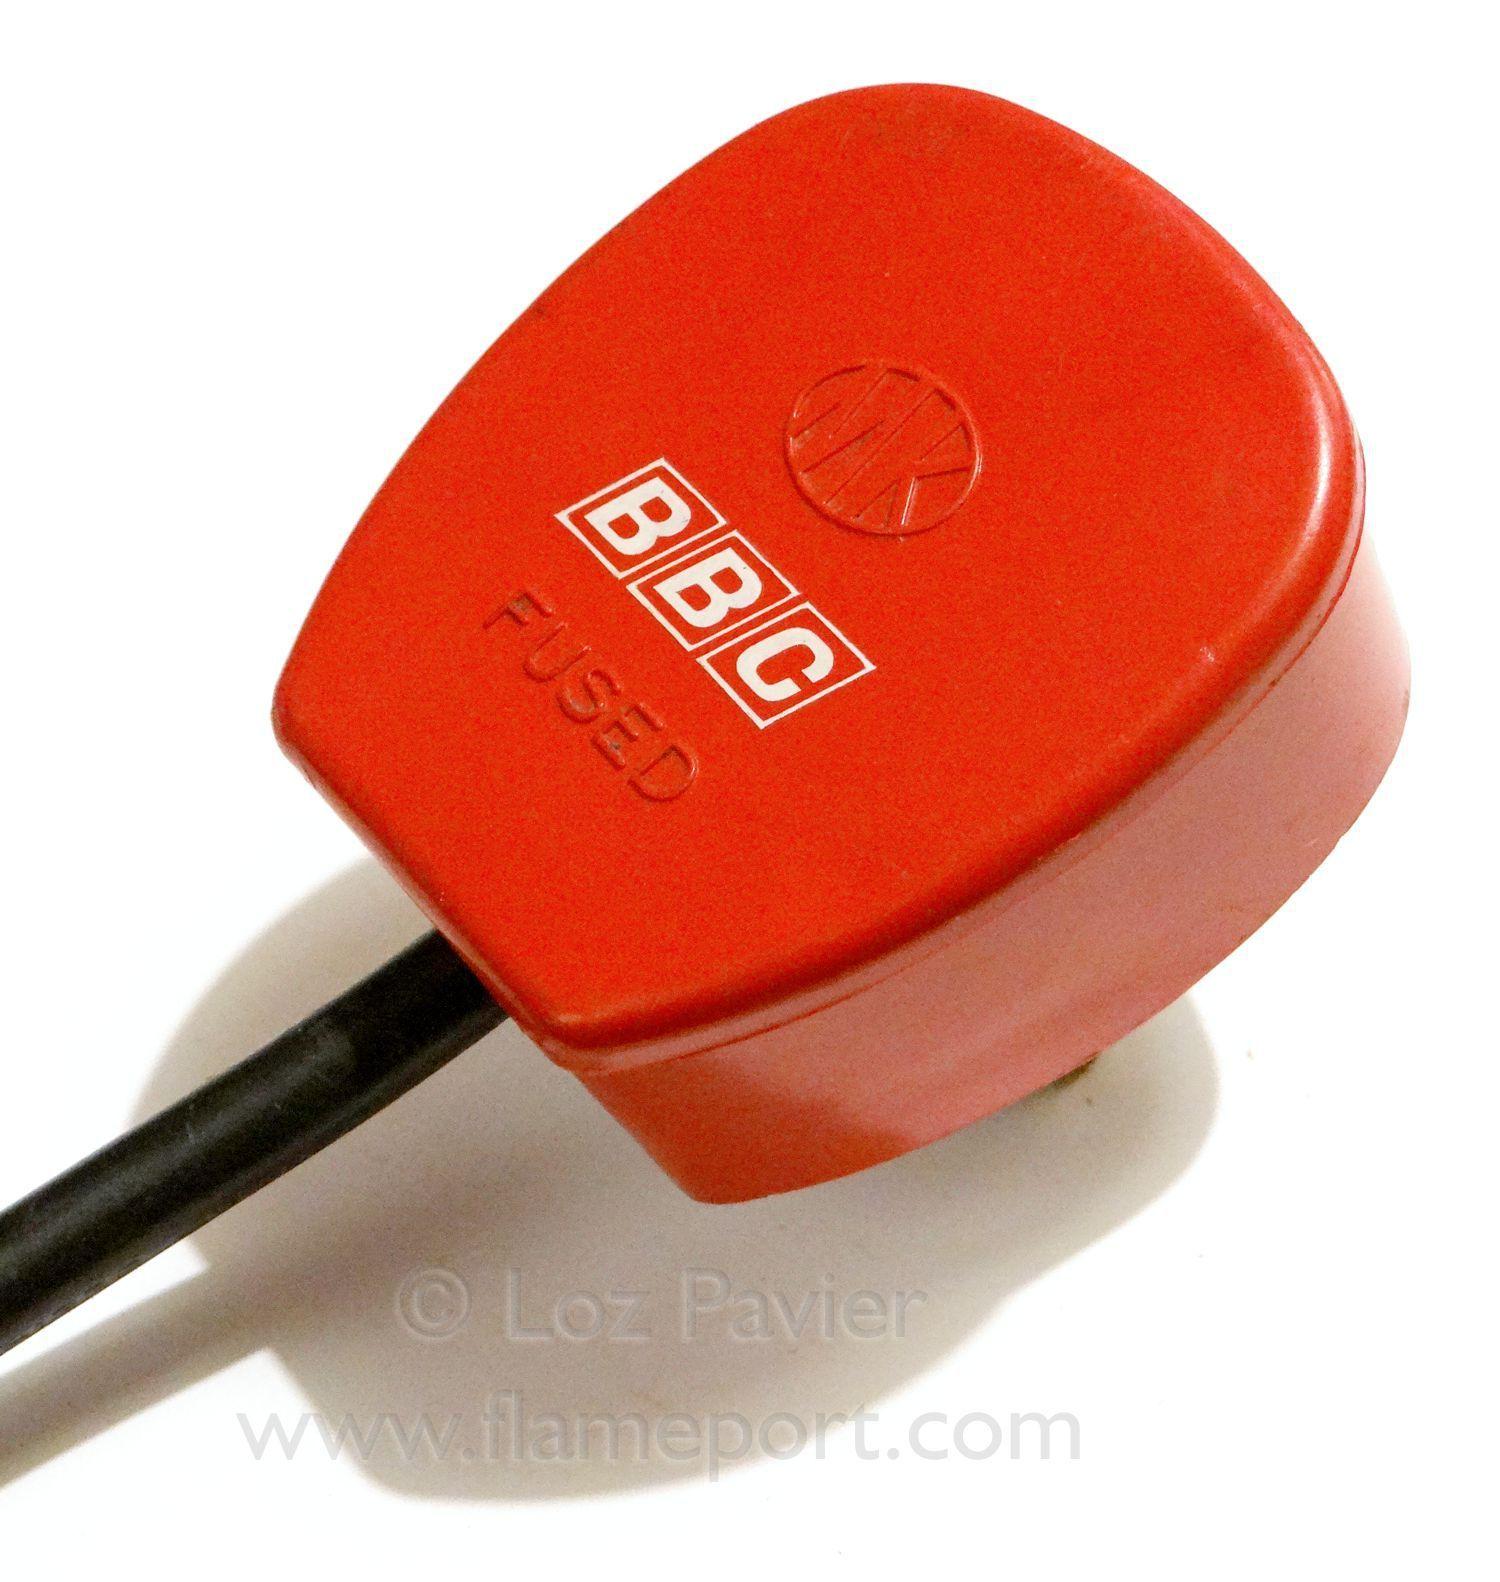 Red White BBC Logo - Red MK Toughplug with white BBC logo